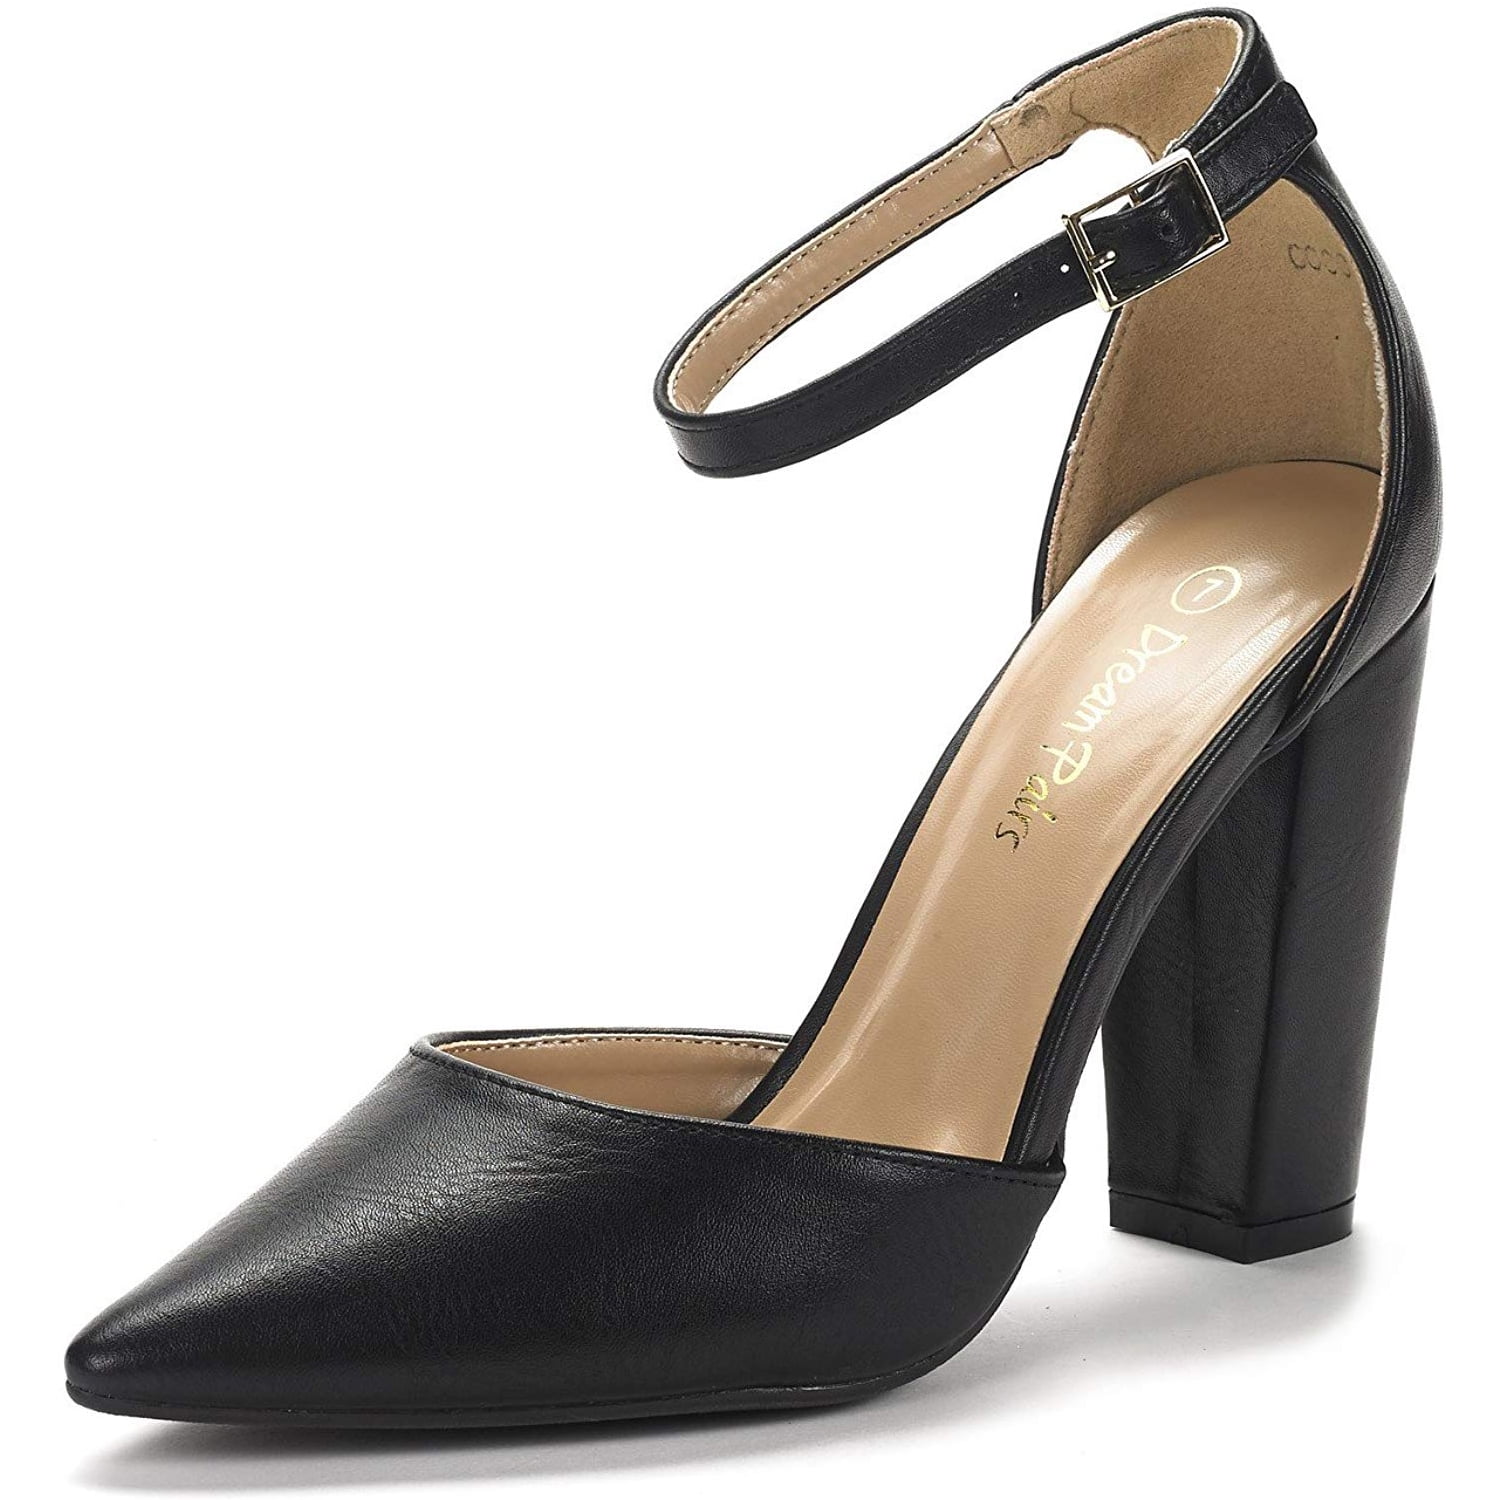 Womens Black Patent Leather Triple Ankle Strap Pumps 7.5 M US